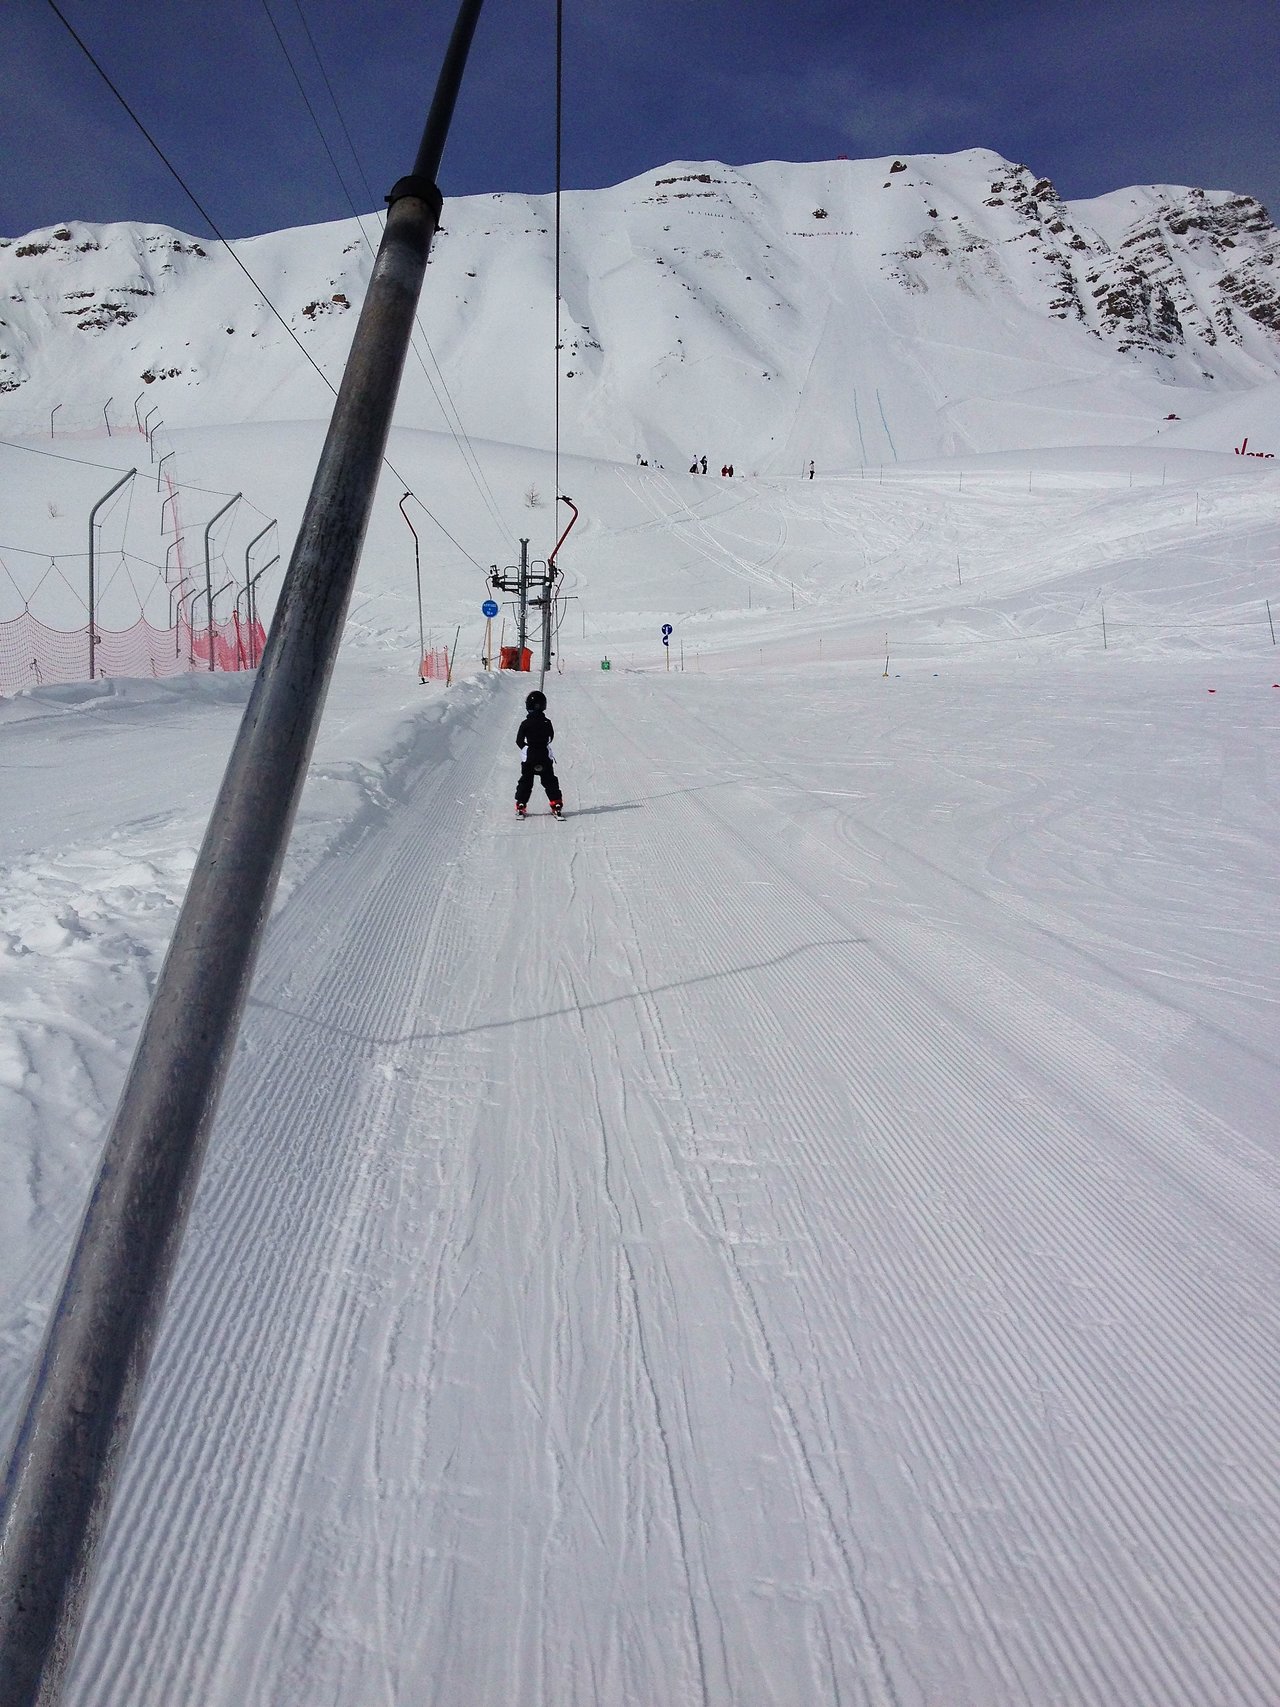 Axl on the ski lift